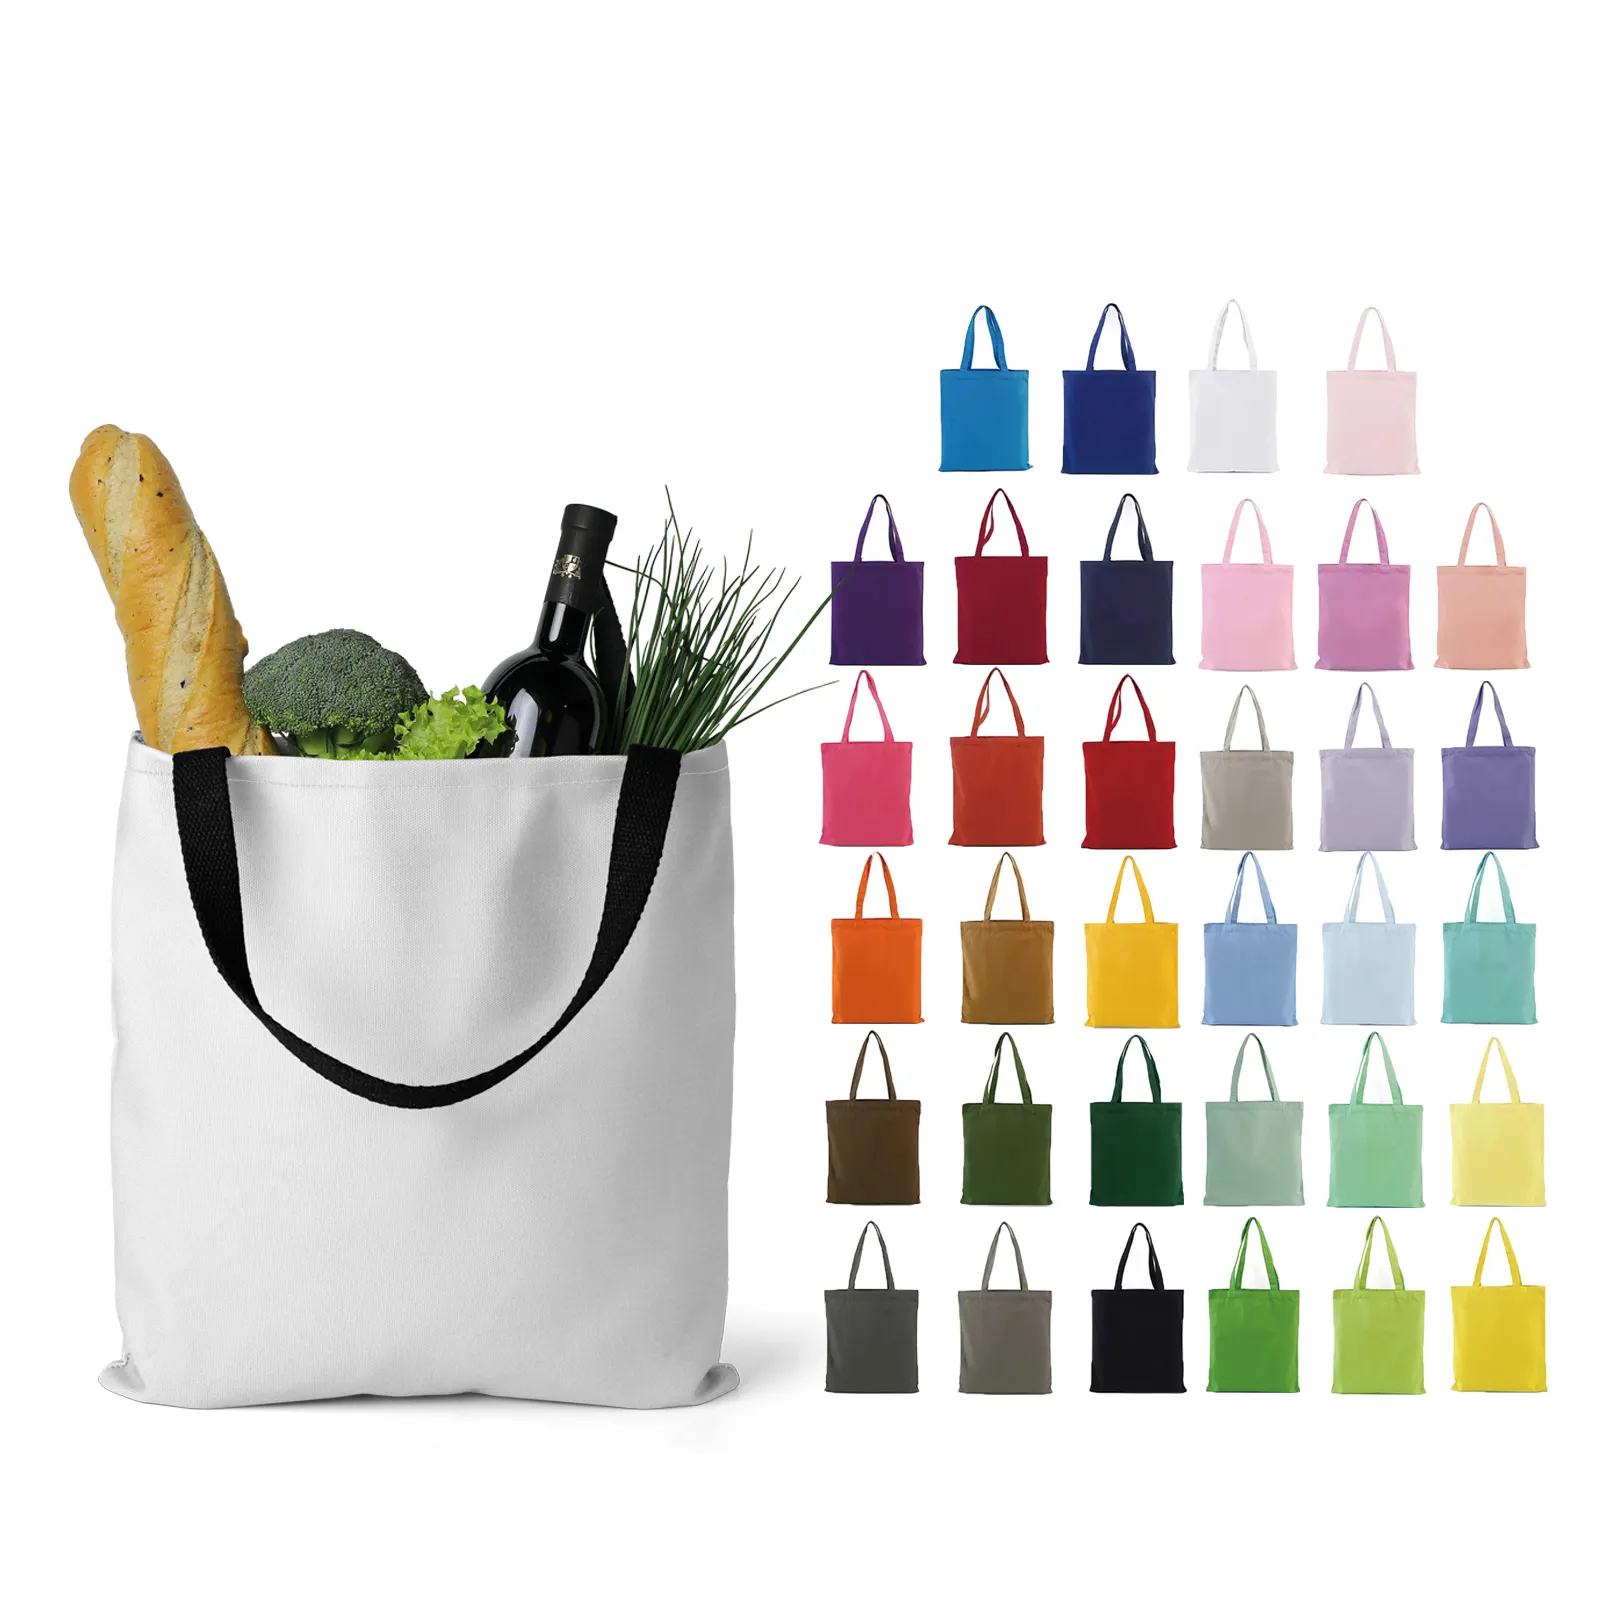 कैनवास शॉपिंग टोट बैग दैनिक उपयोग के लिए टिकाऊ कॉटन बैग और लोगो के साथ शॉपिंग टिकाऊ कैनवास बैग